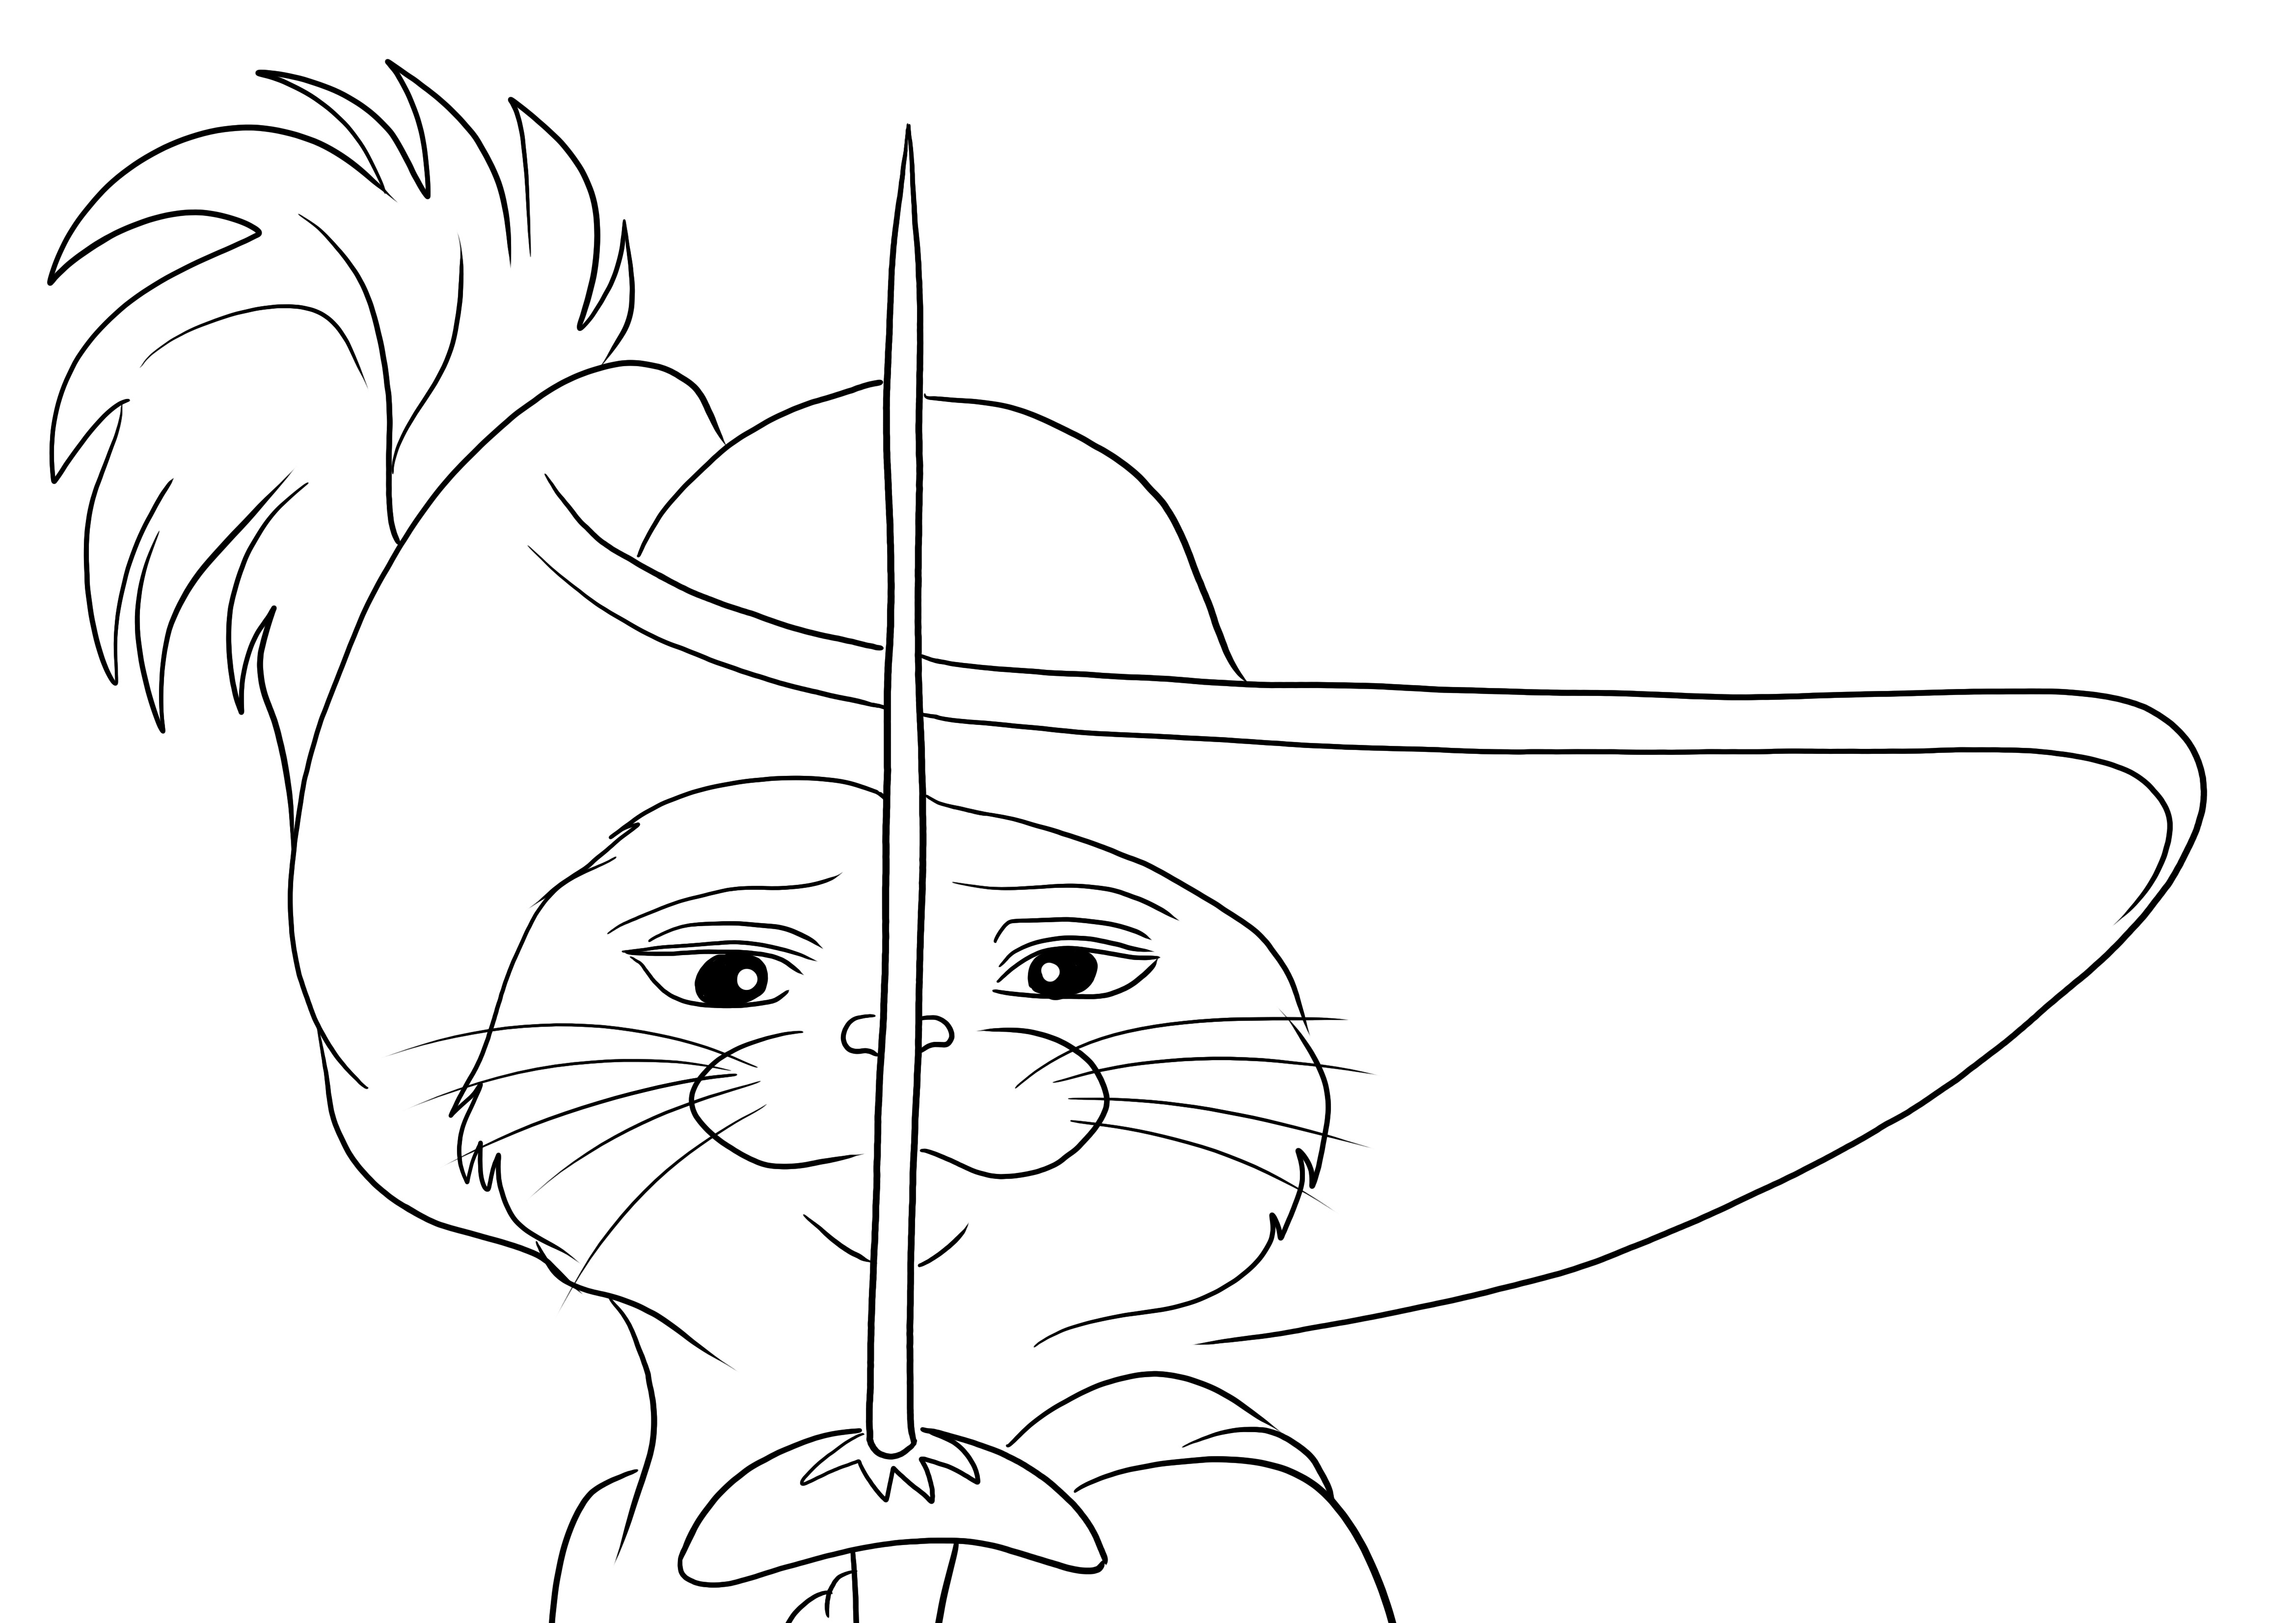 Impression gratuite du chat botté et de son épée à colorier pour un dessin amusant